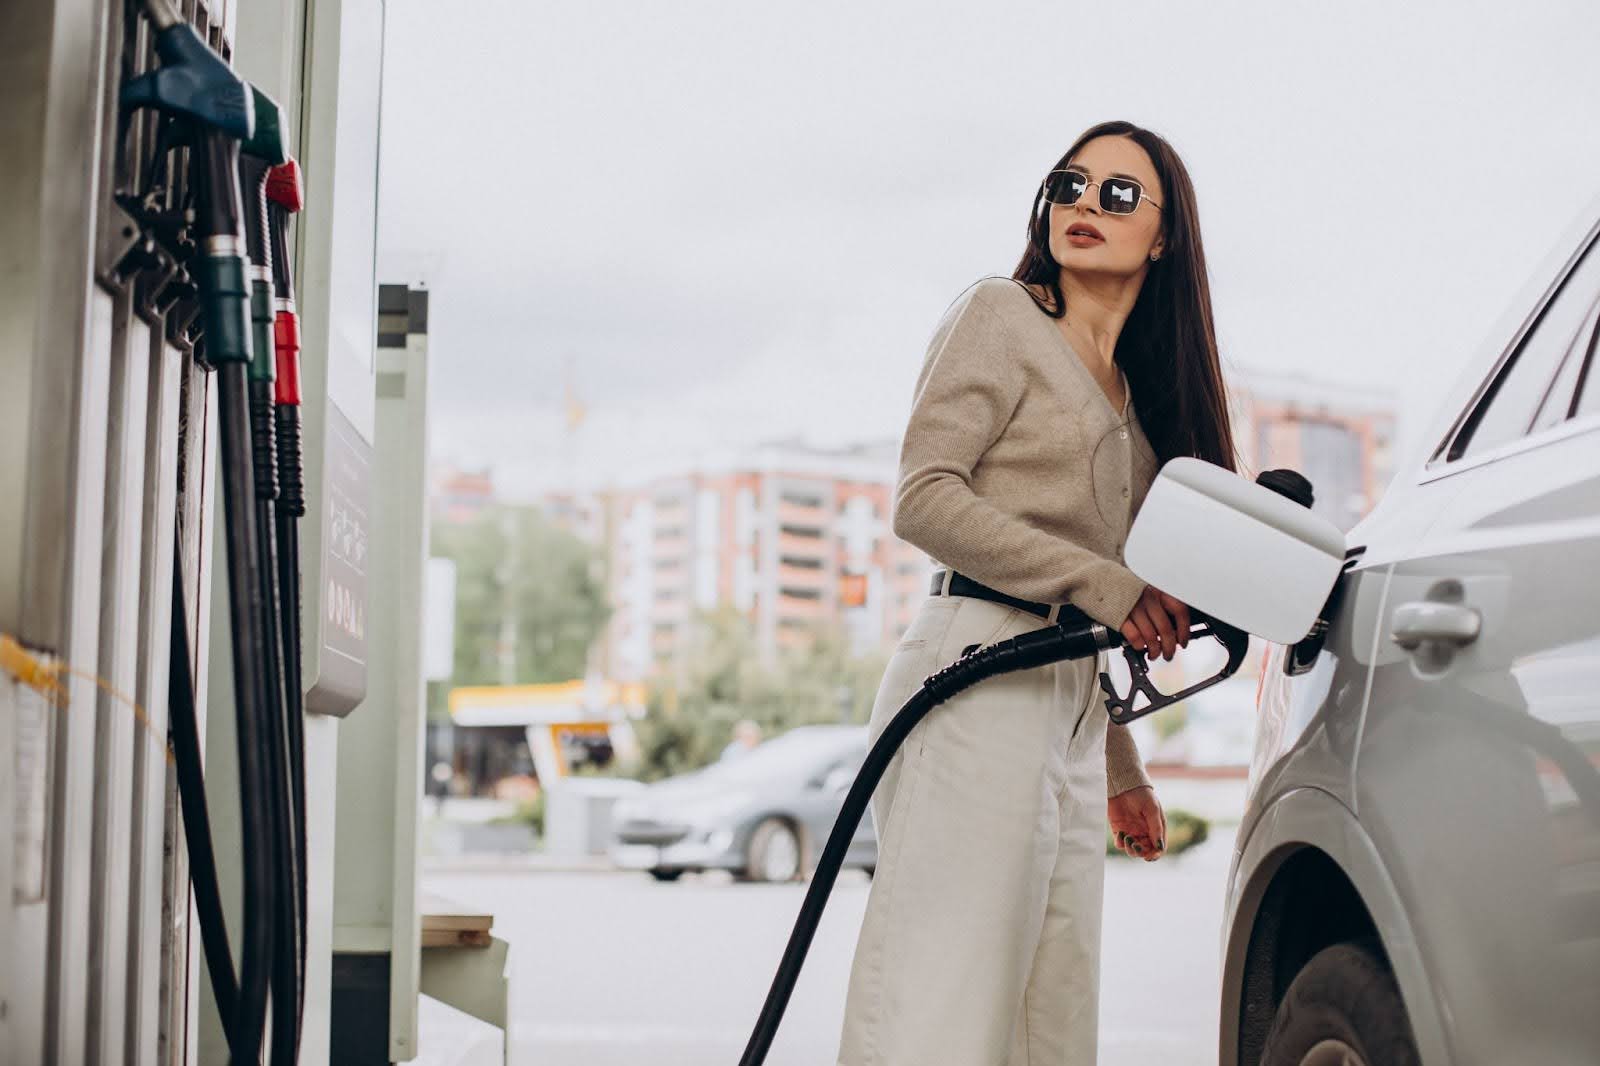 Na imagem uma mulher de óculos escuros abastece seu carro enquanto observa a bomba de gasolina.